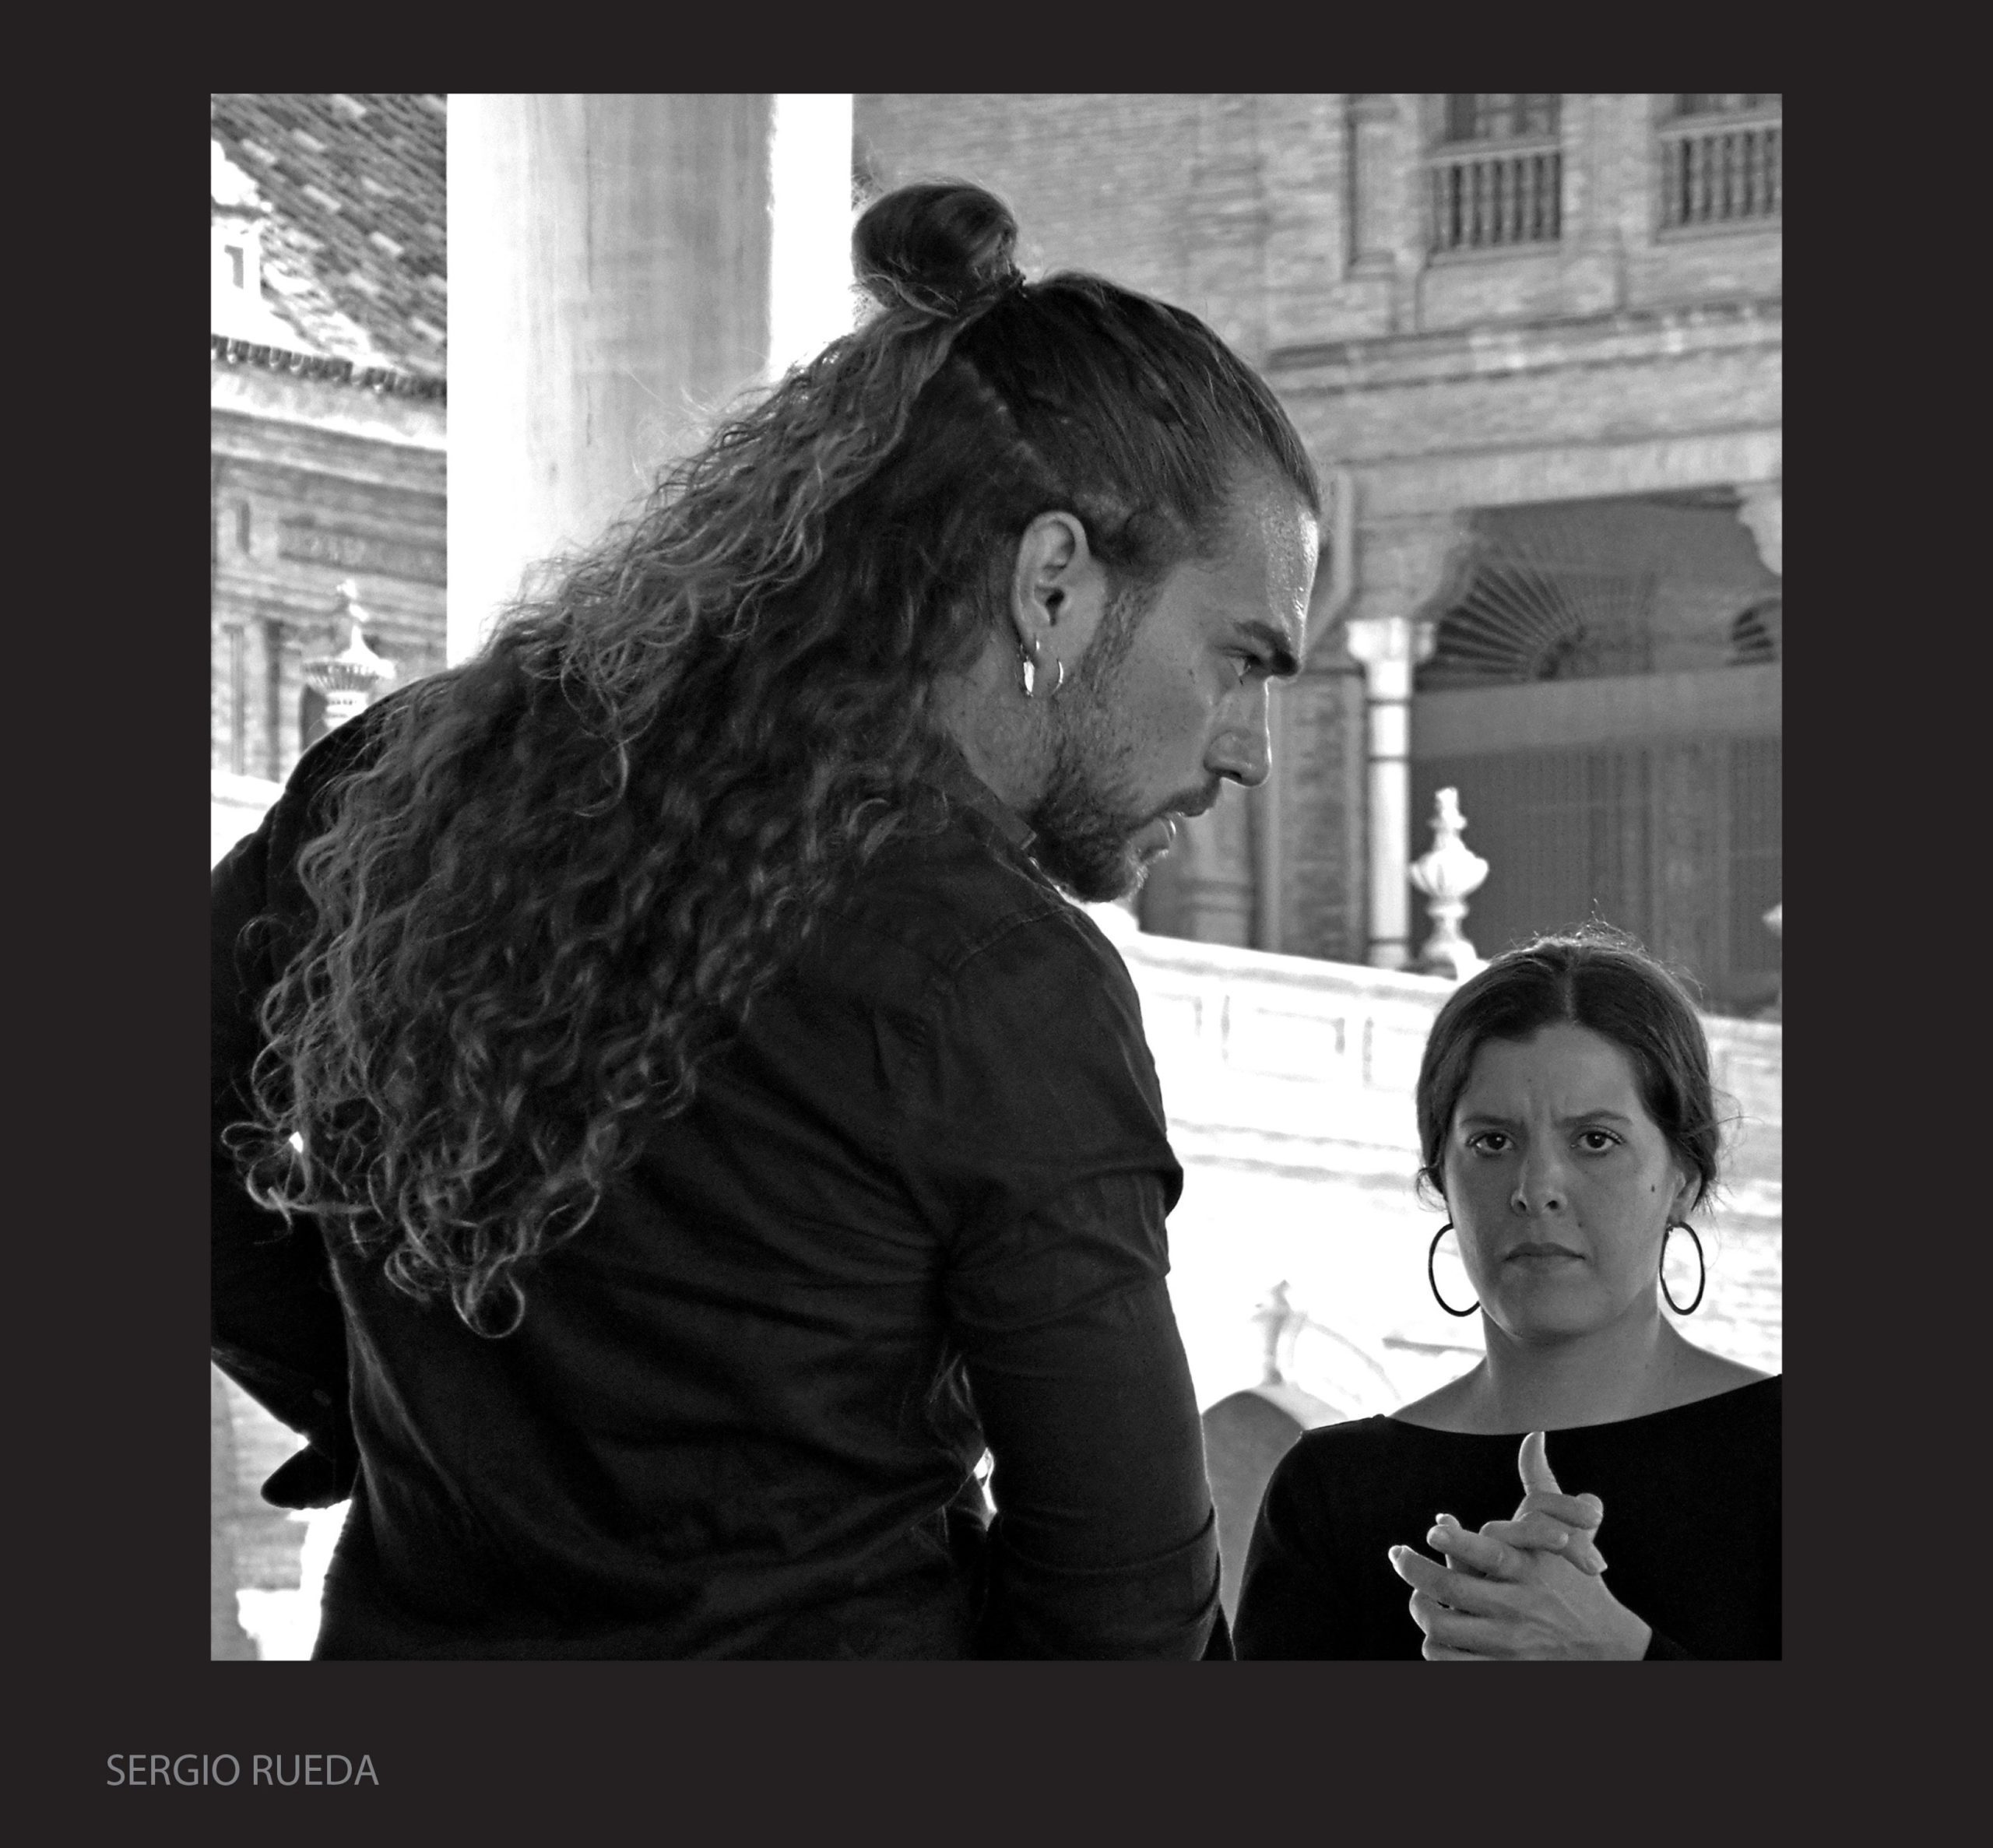 Fotografía del concurso de Fotografía Flamenco. Por Sergio Rueda